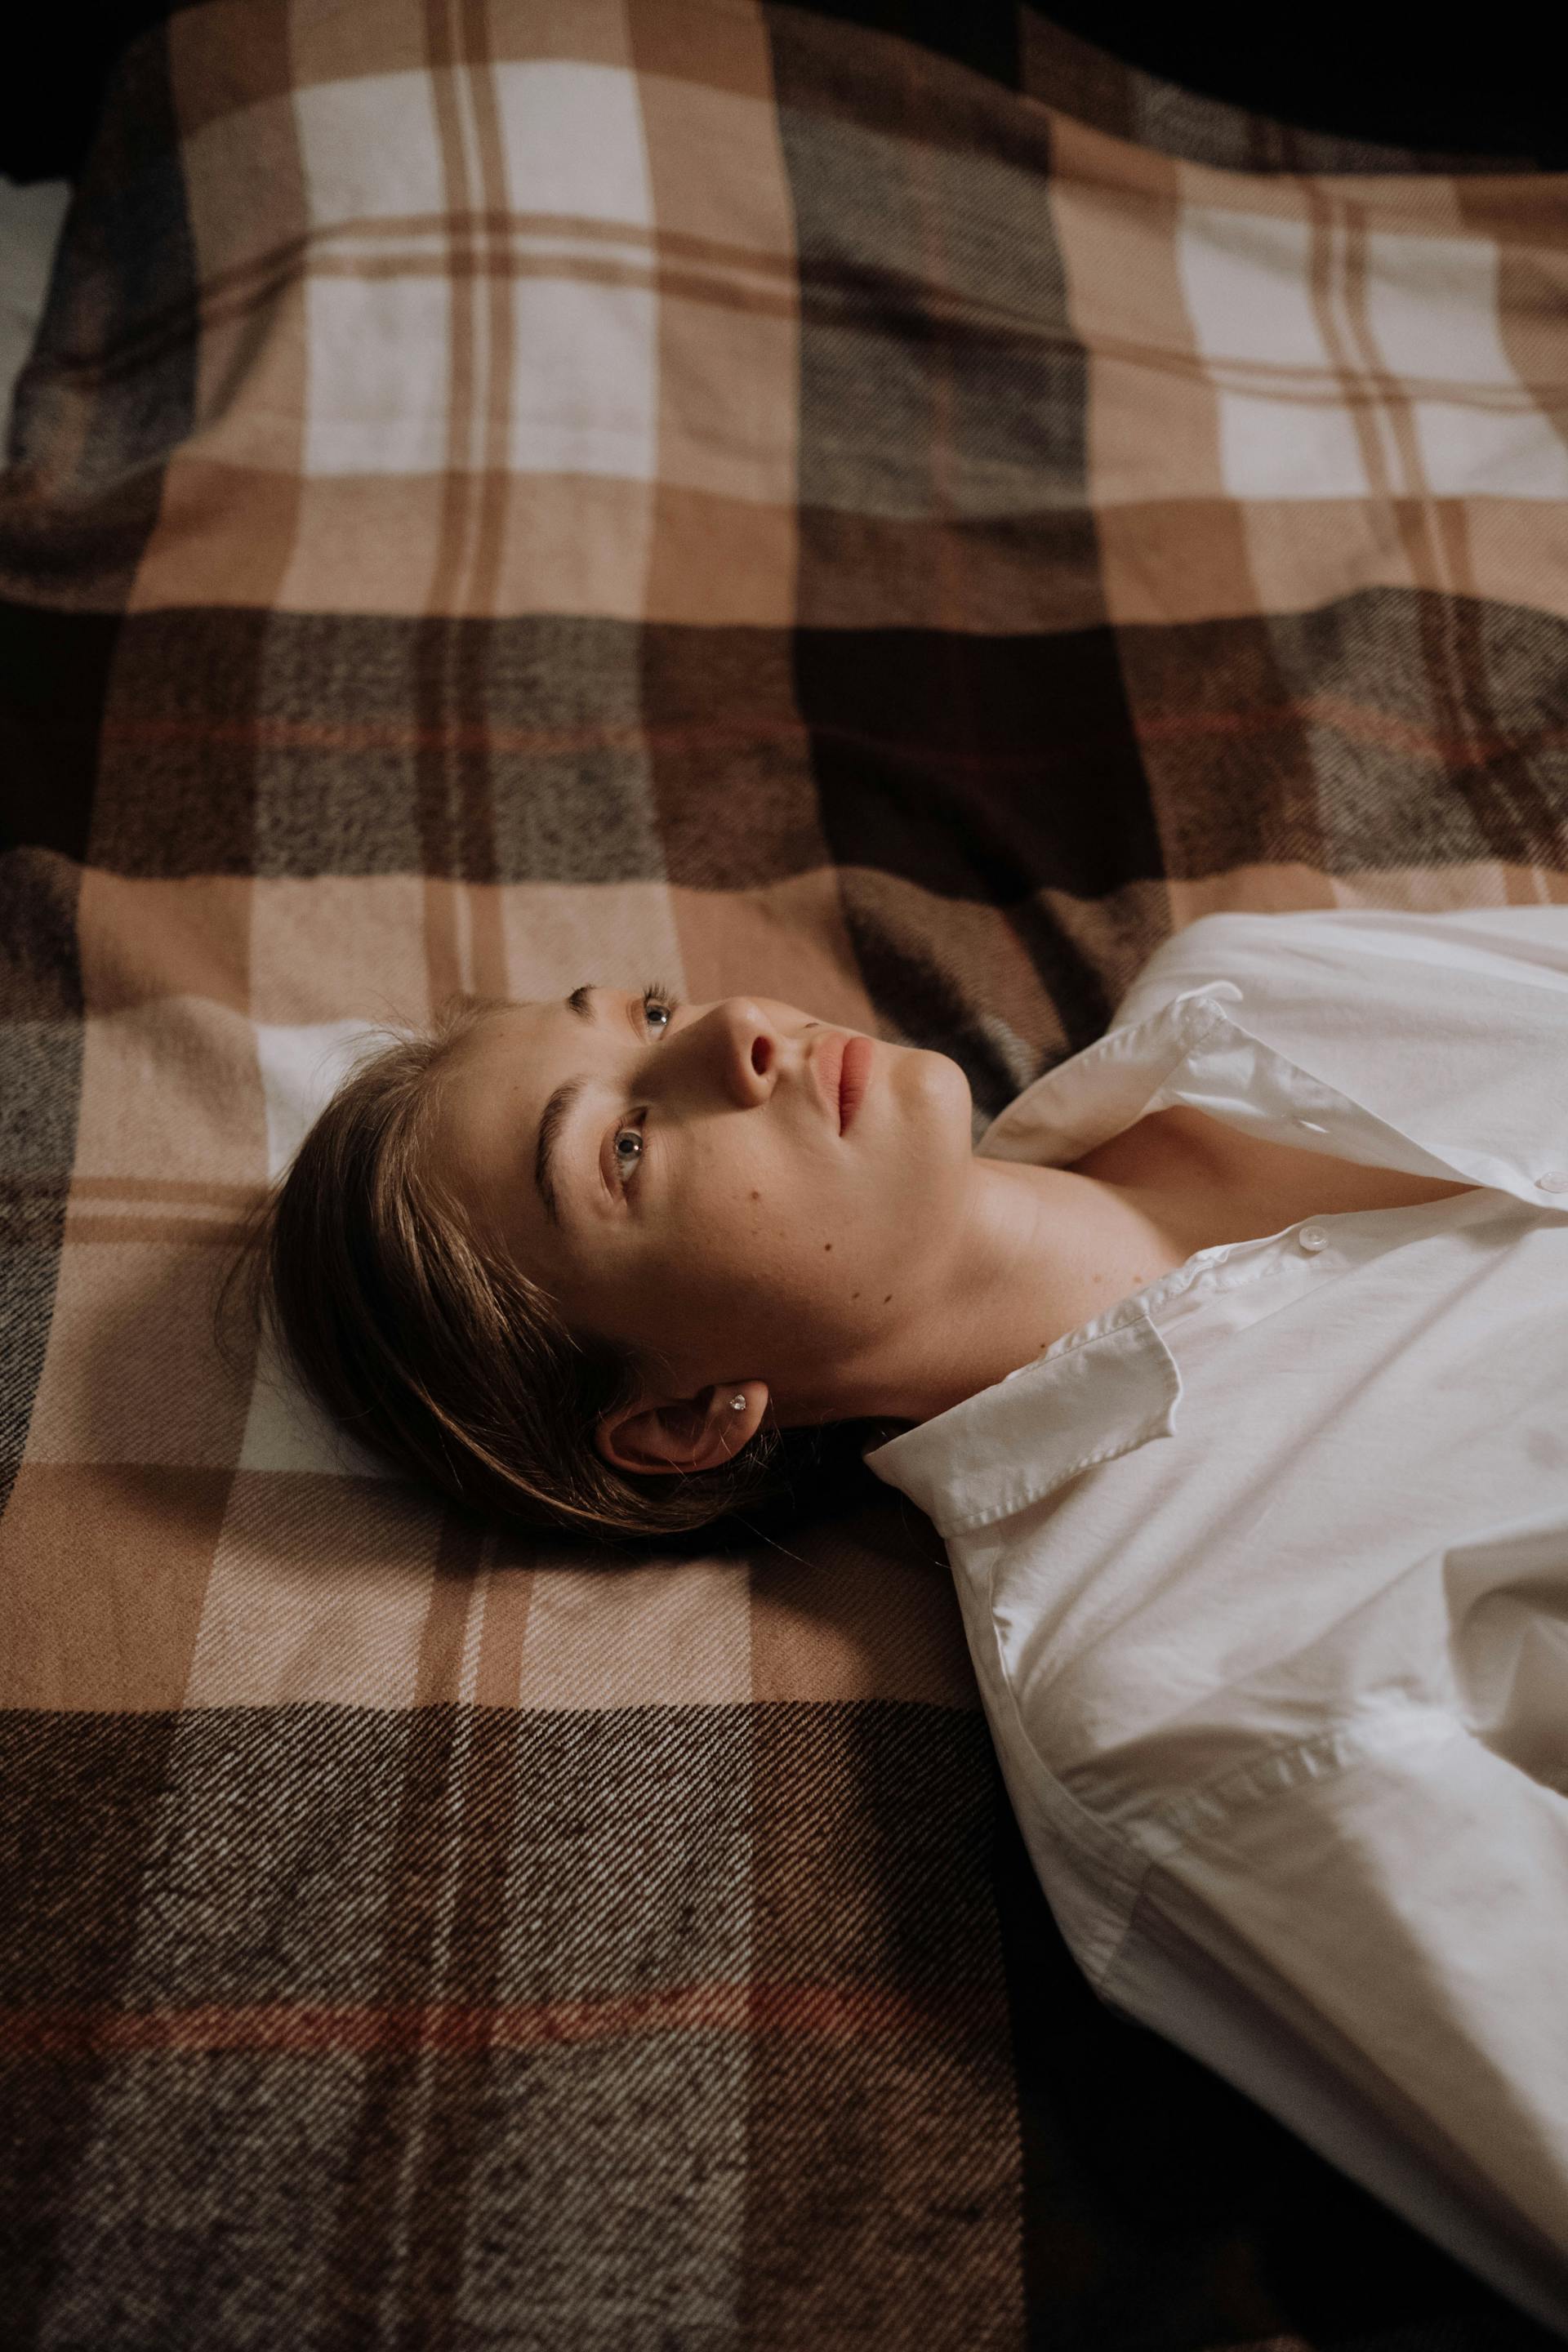 Eine Frau liegt wach in ihrem Bett | Quelle: Pexels